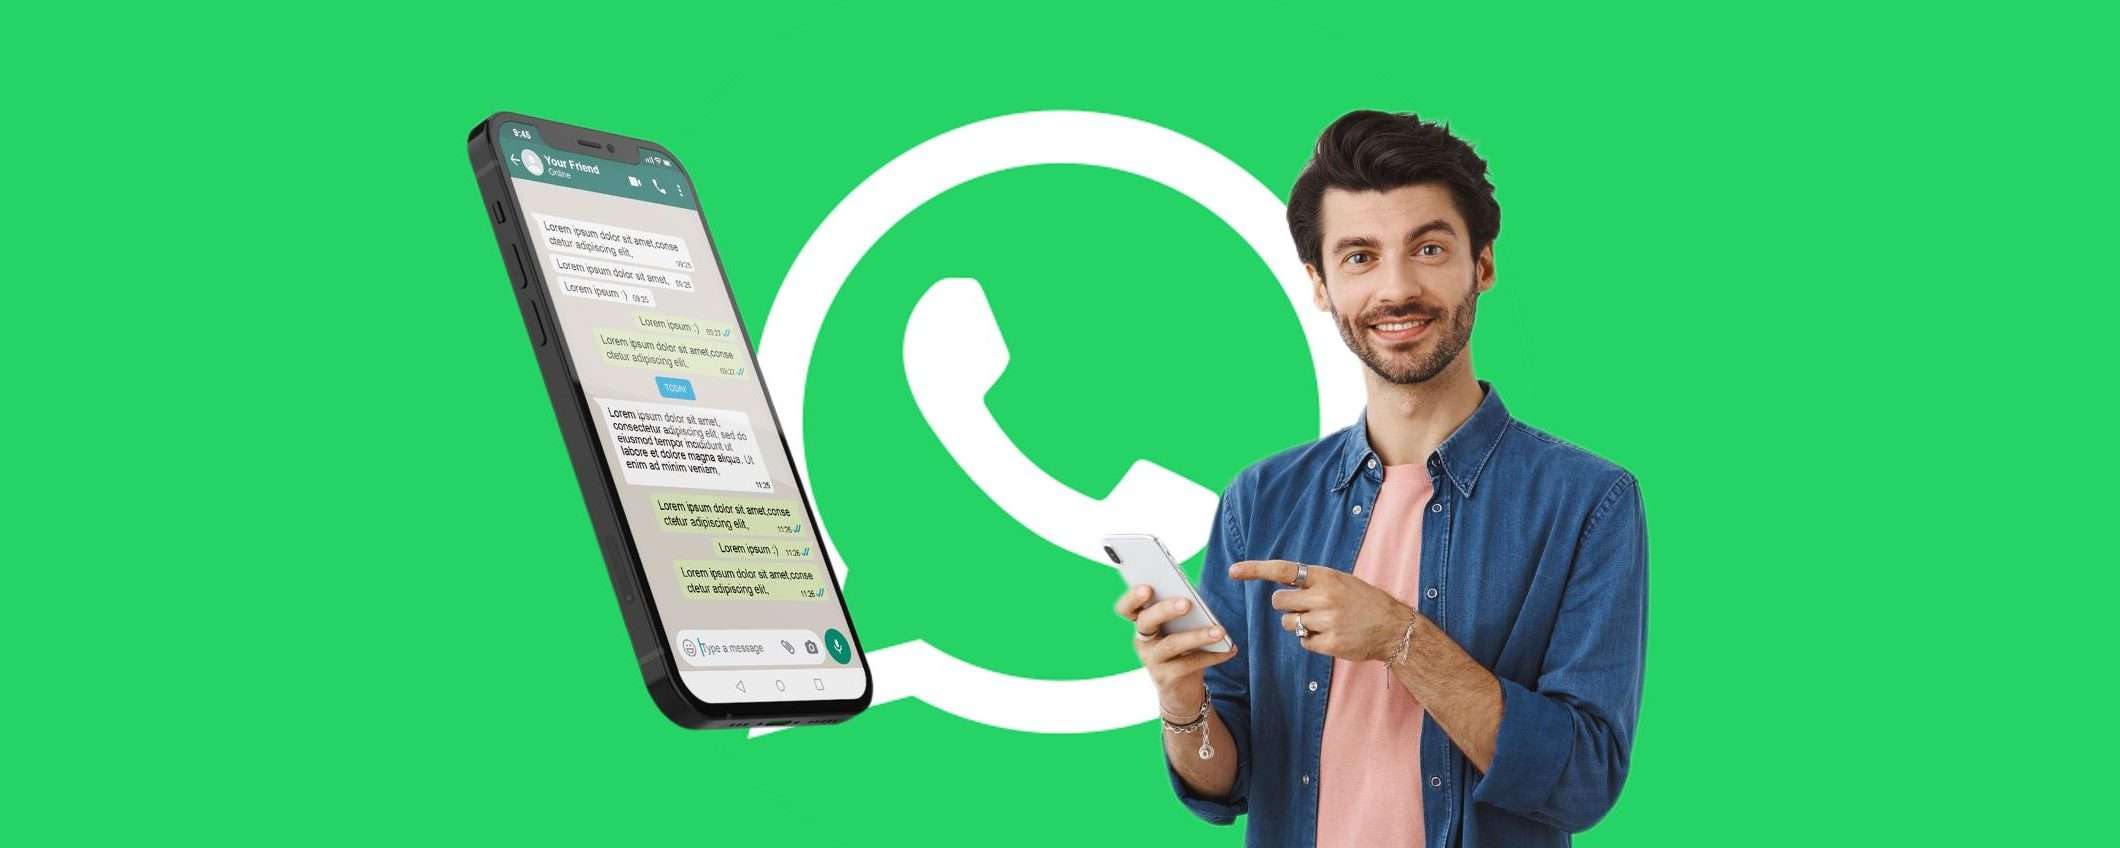 WhatsApp: come liberare spazio sul telefono grazie a questo TRUCCO